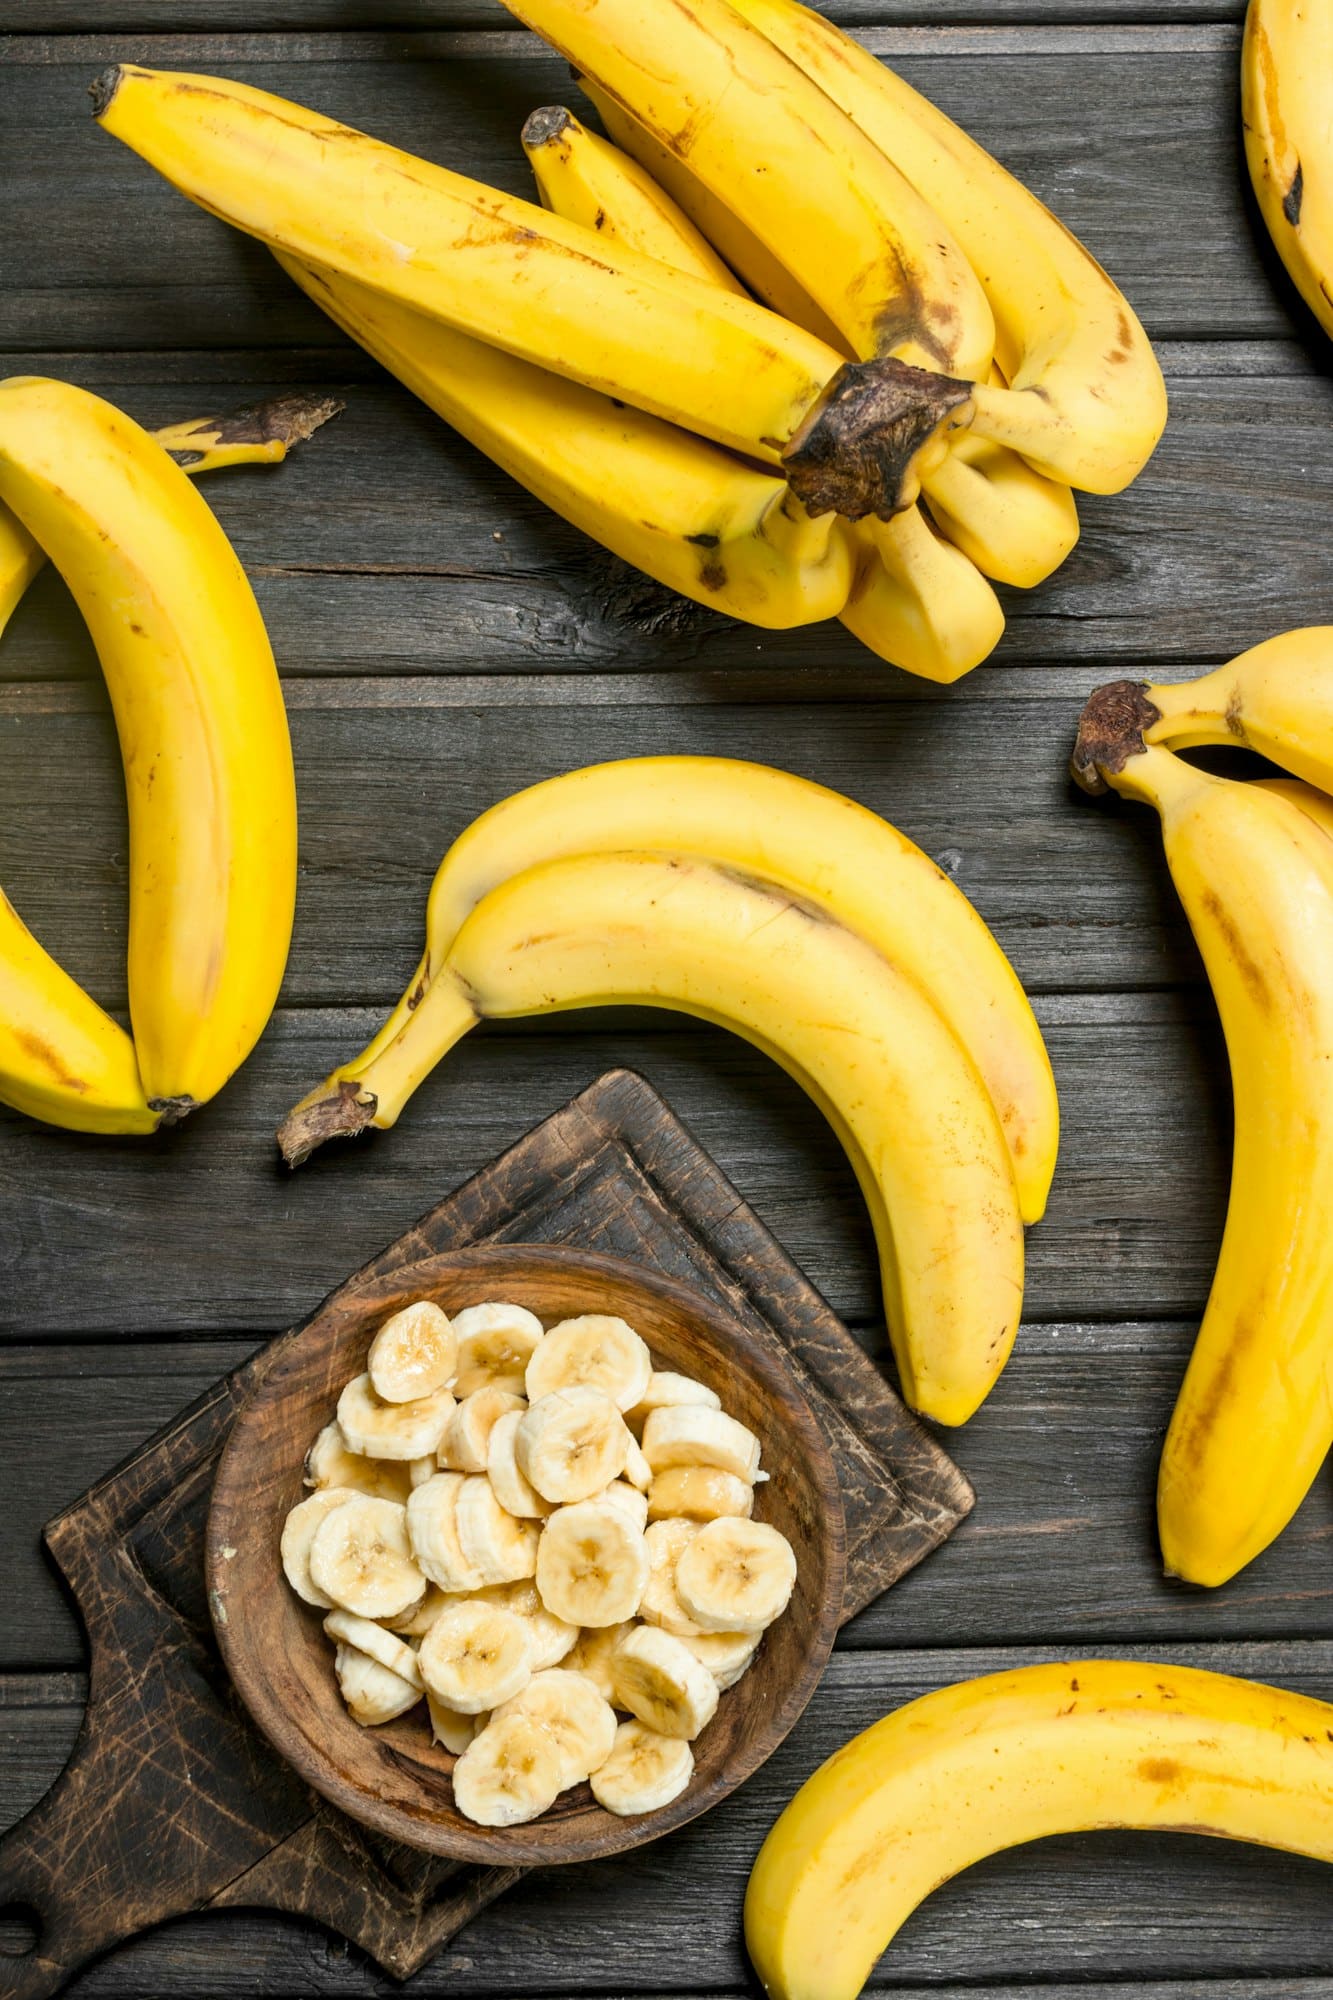 Μπανάνα: Τα οφέλη για την υγεία